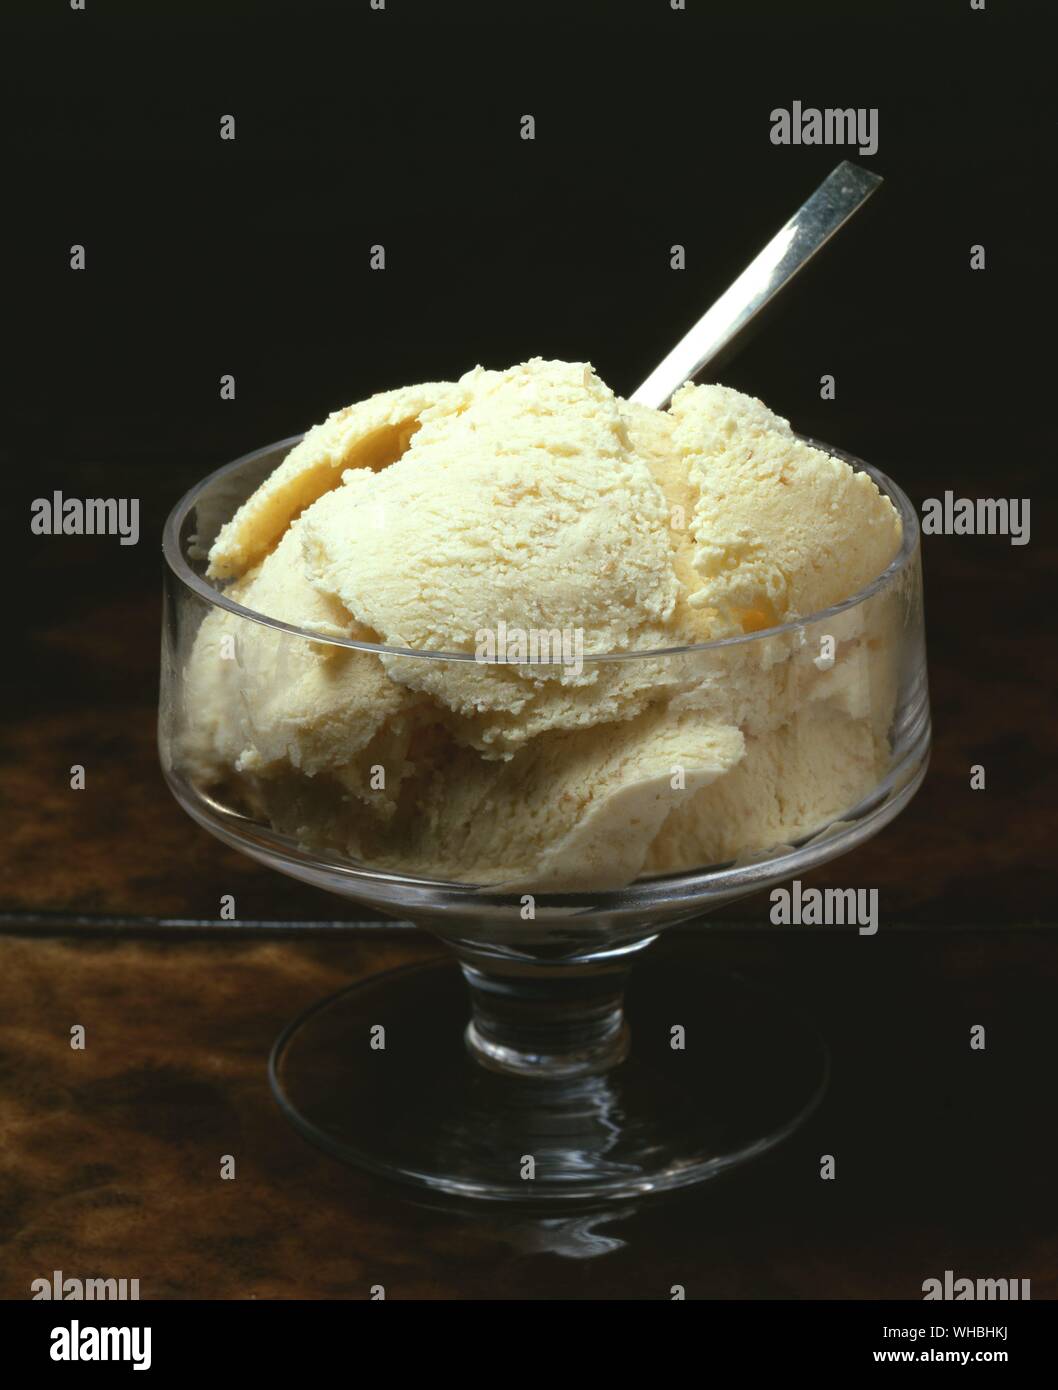 Pane marrone Gelato : Dessert gelato ricavato da prodotti lattiero-caseari come il latte e la crema di latte Foto Stock